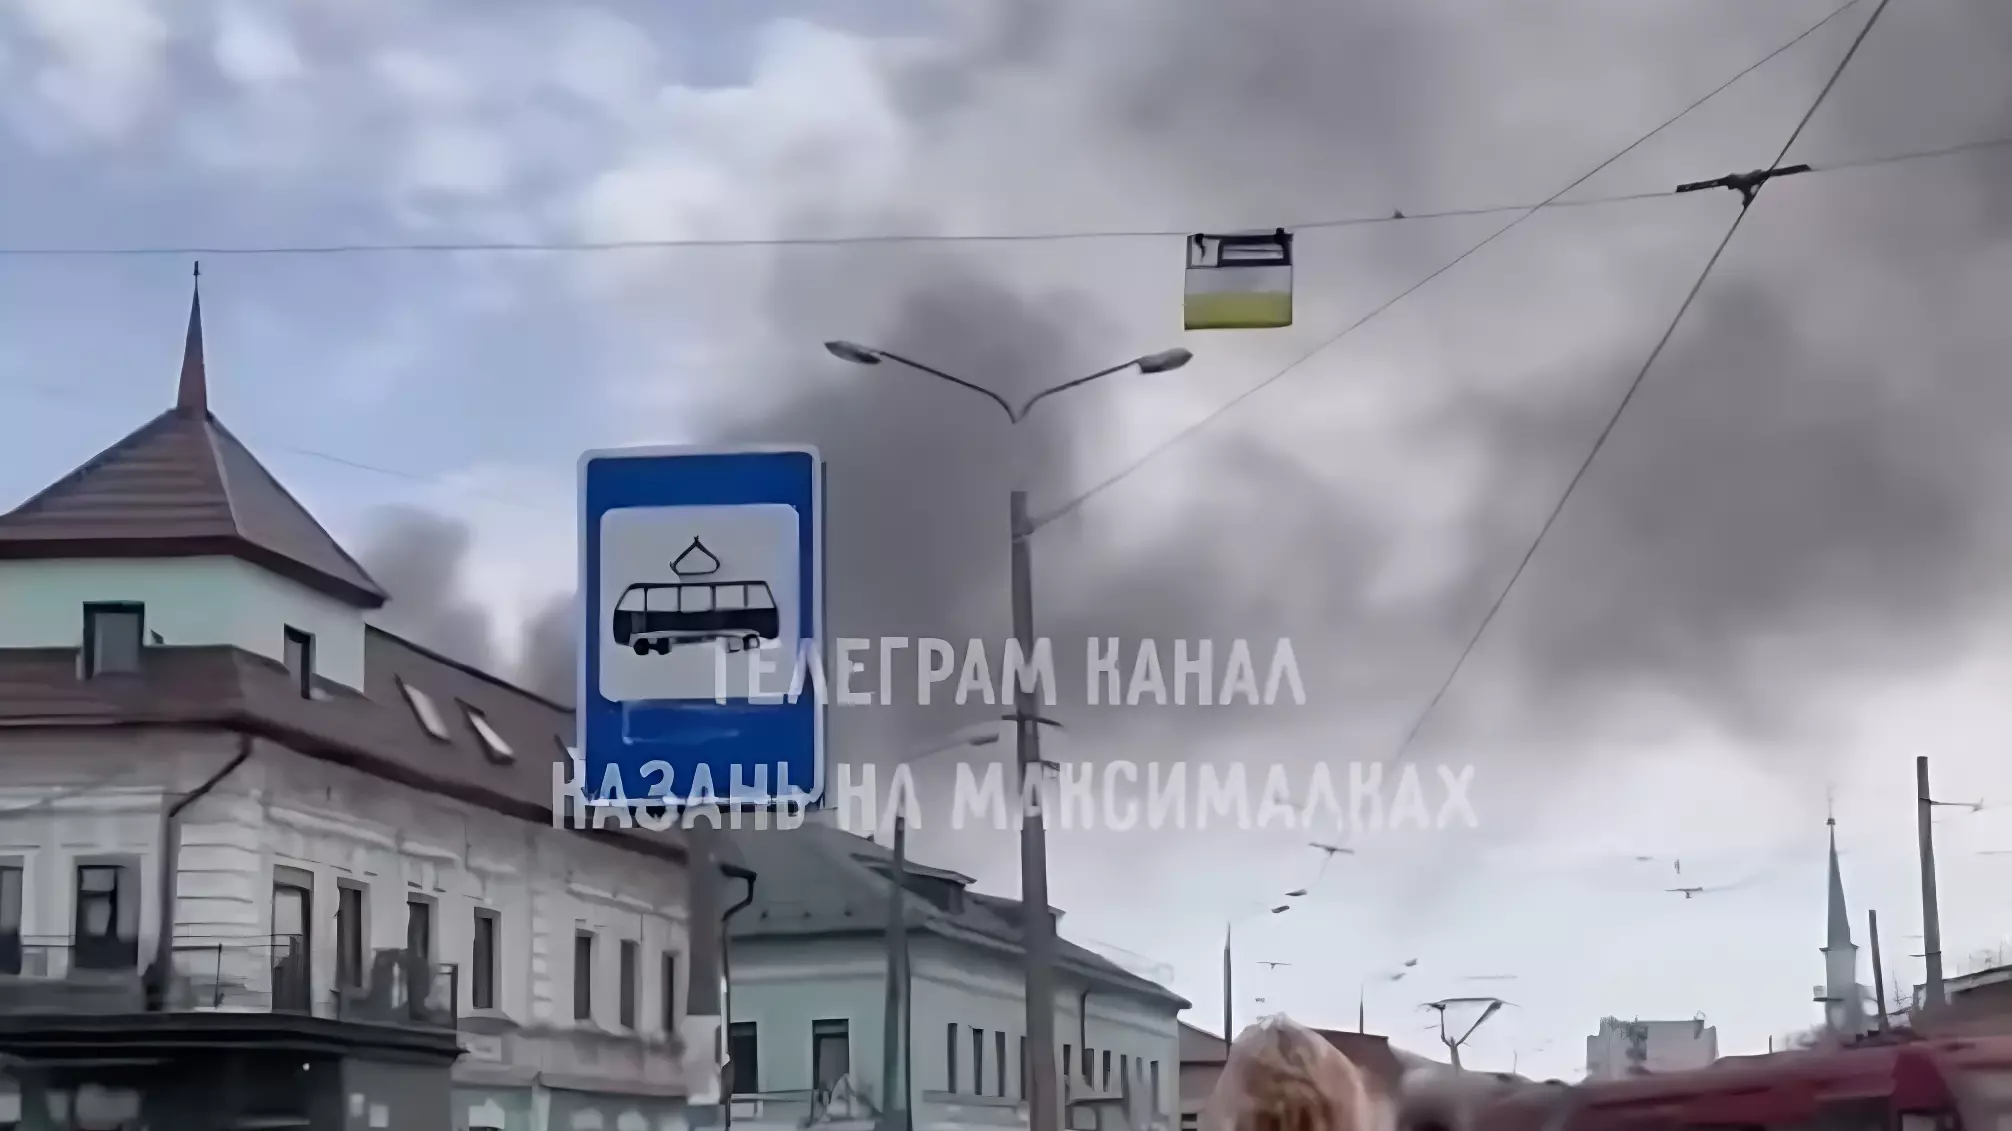 Рядом с казанским рынком заметили столб черного дыма